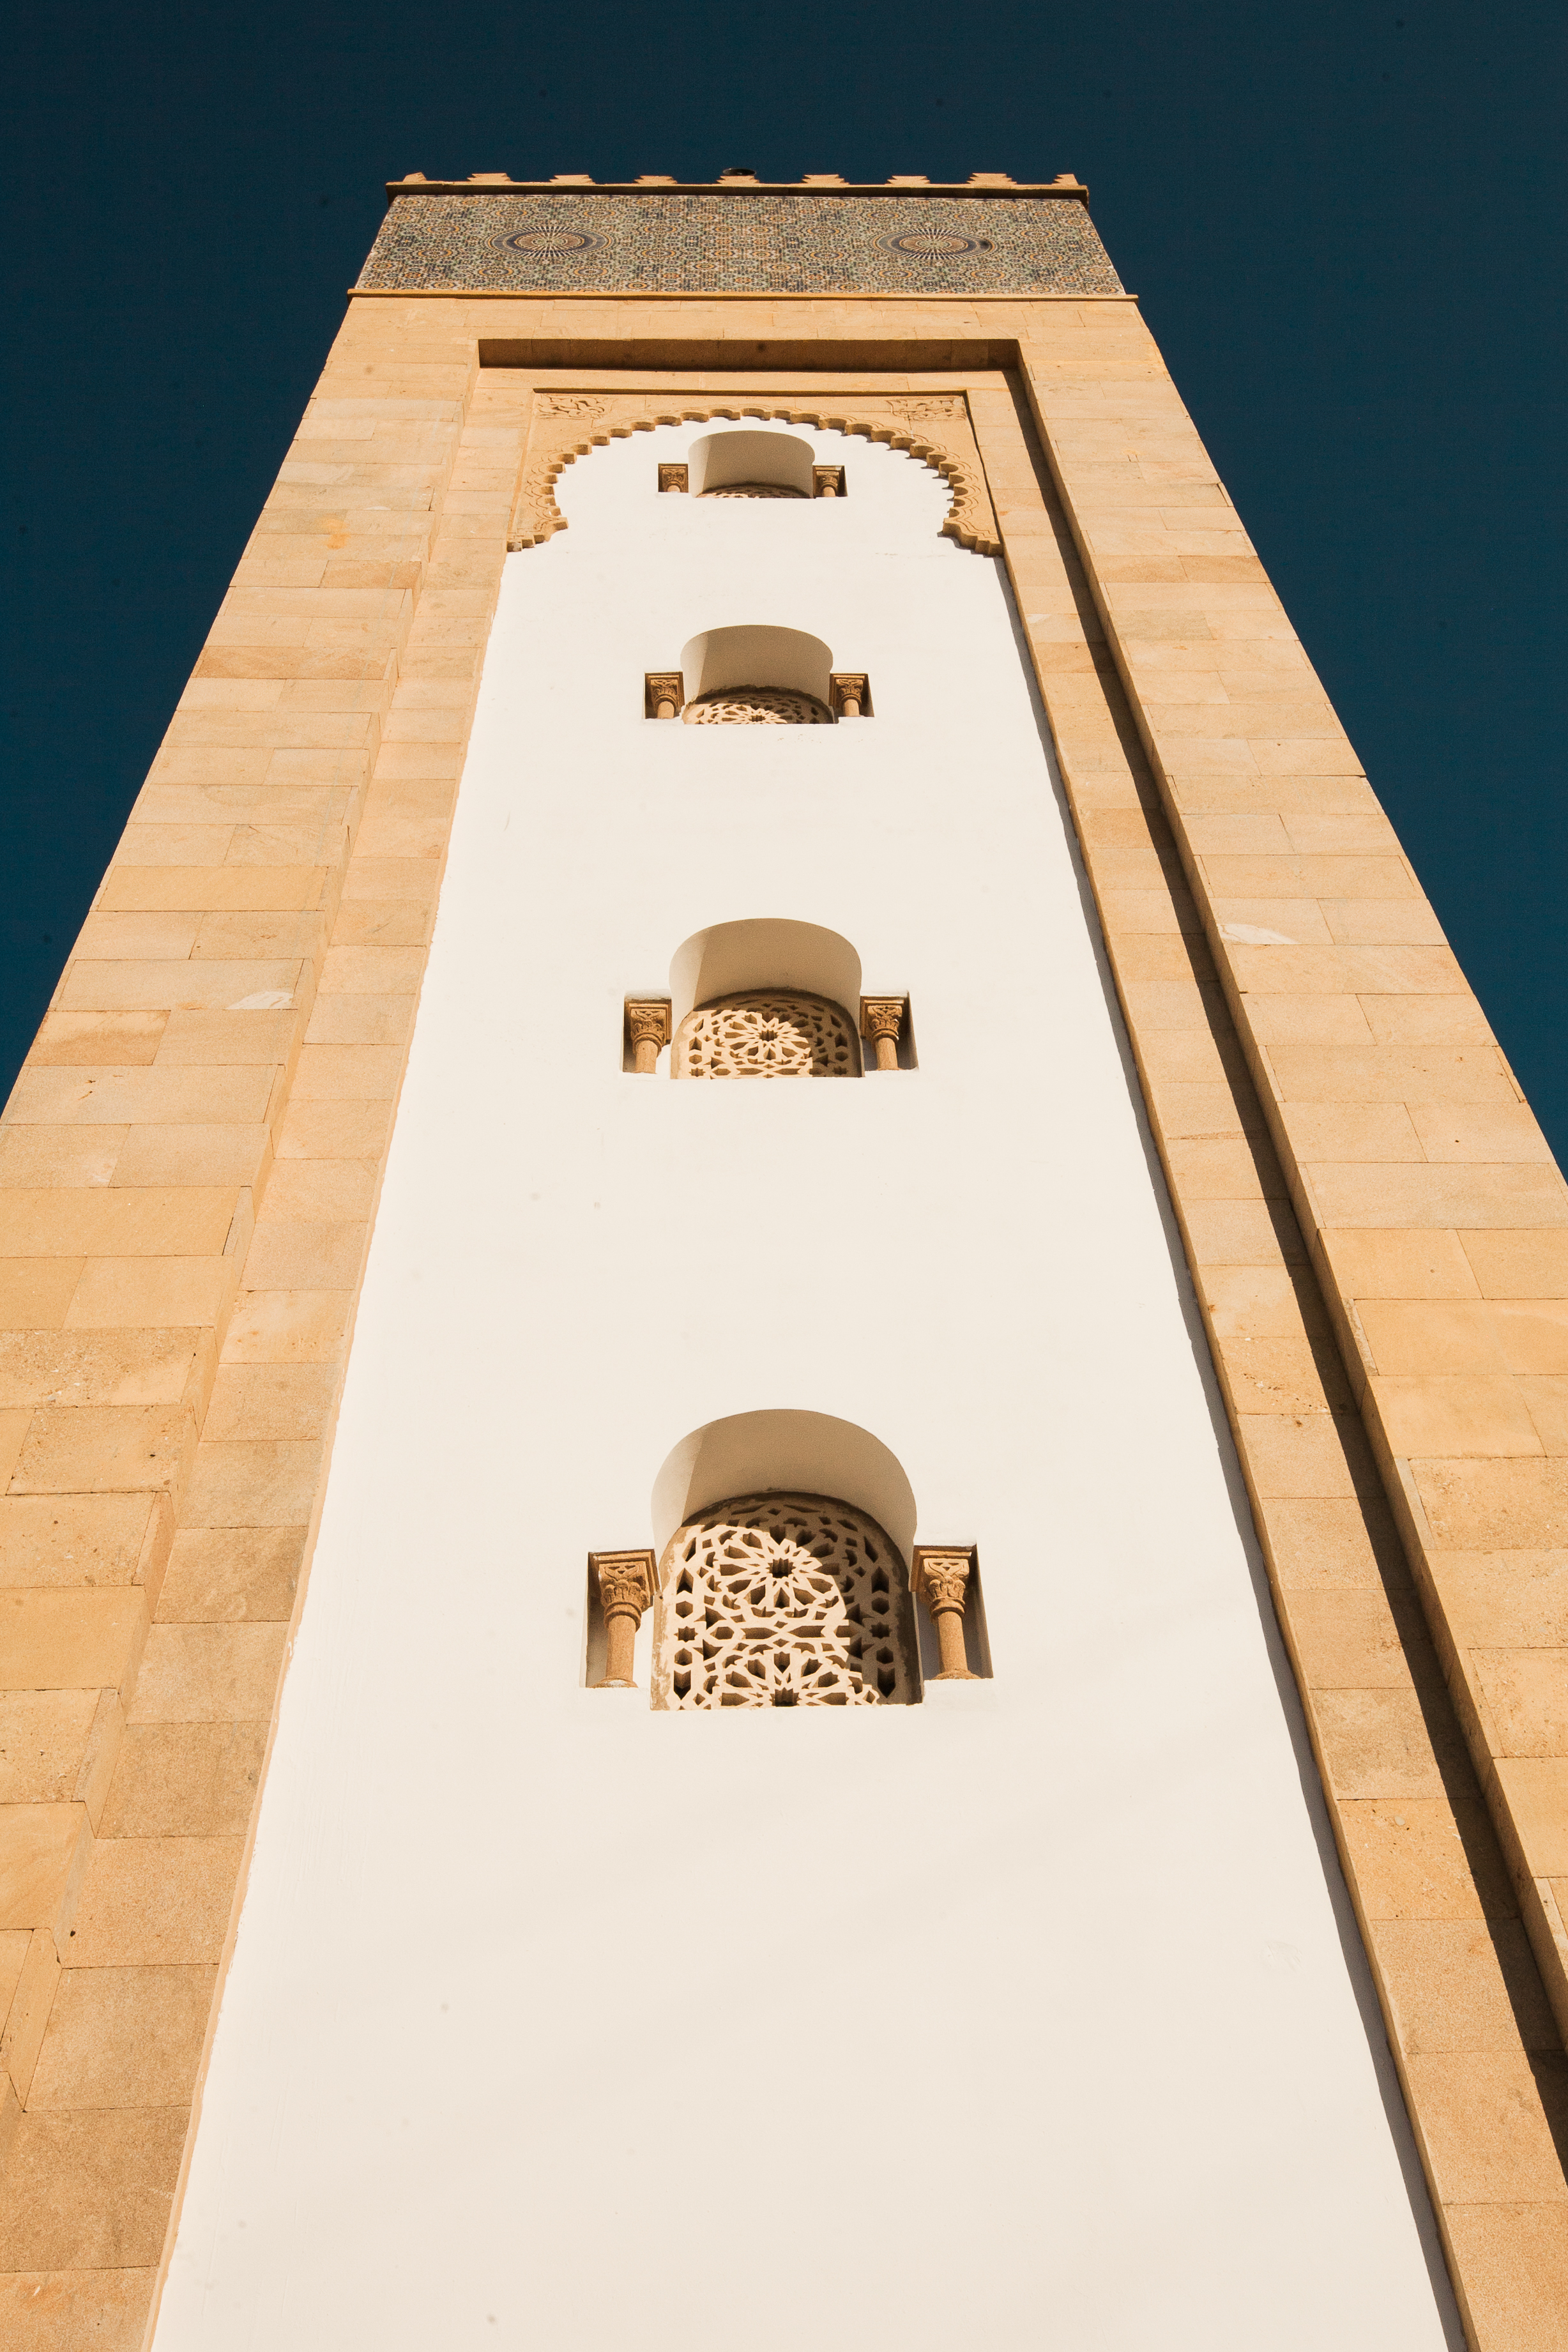 imb-photos-moroccan-mosque-5.jpg